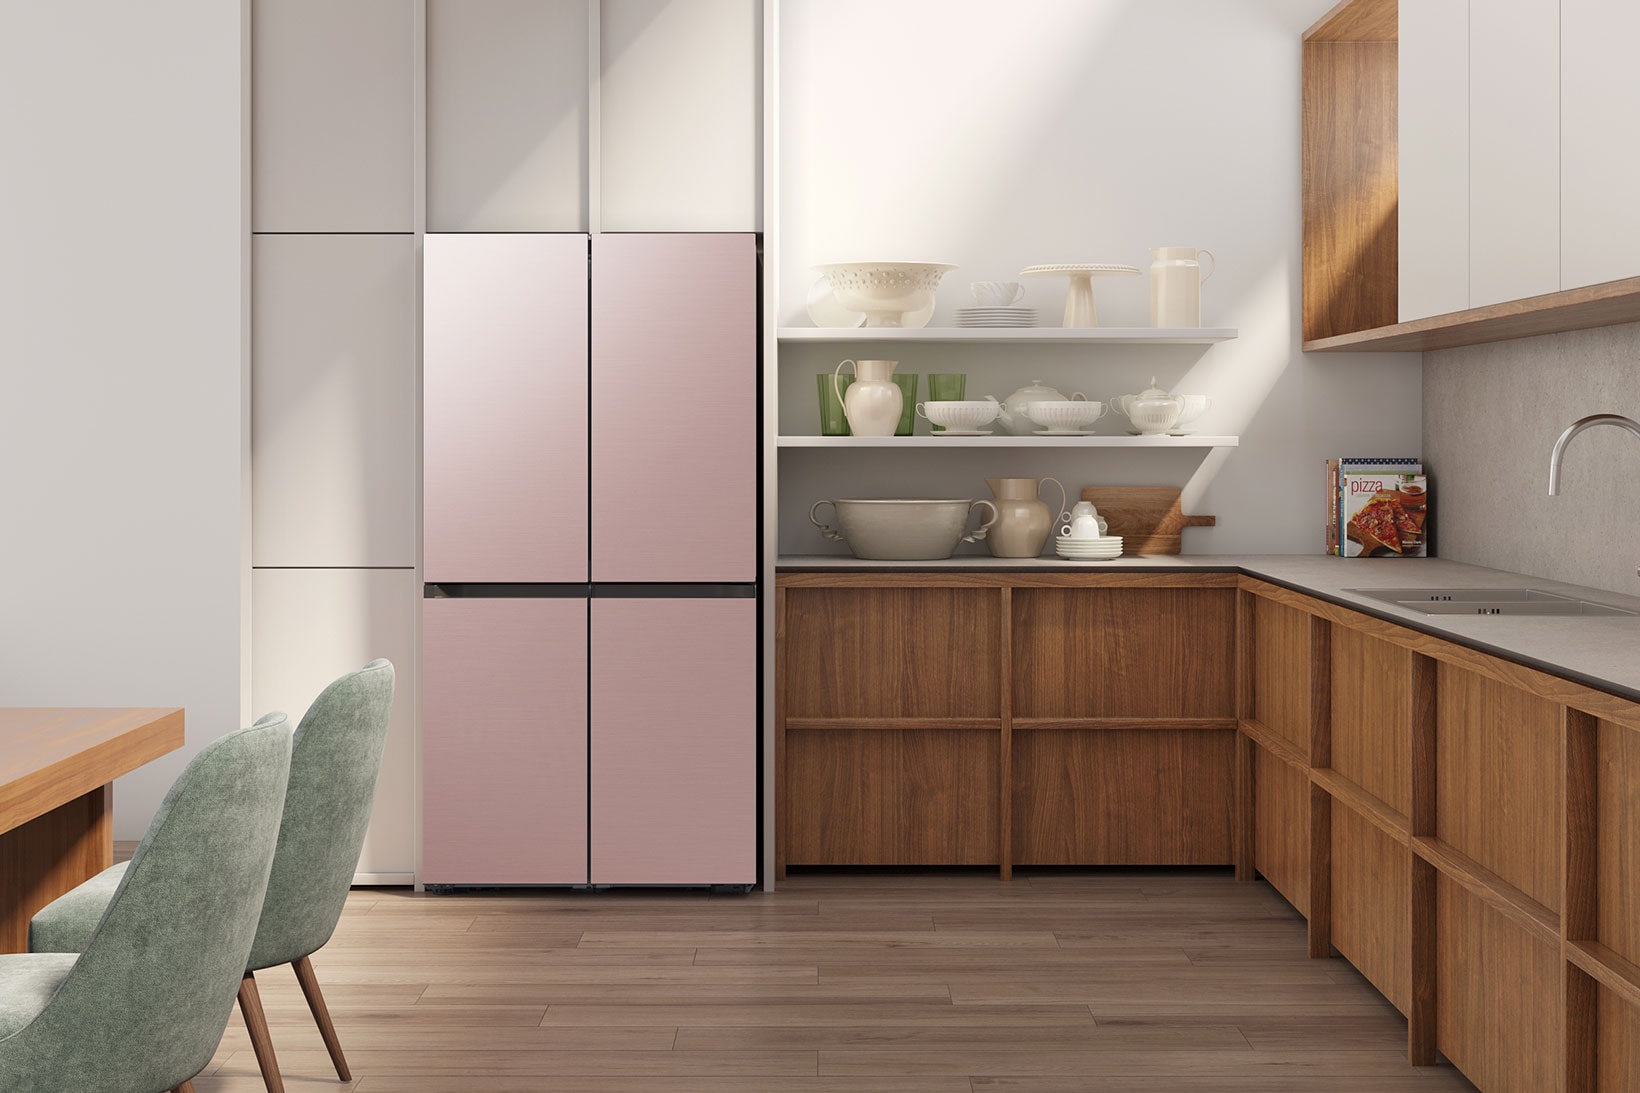 samsung bespoke refrigerator pink home kitchen gadgets appliances